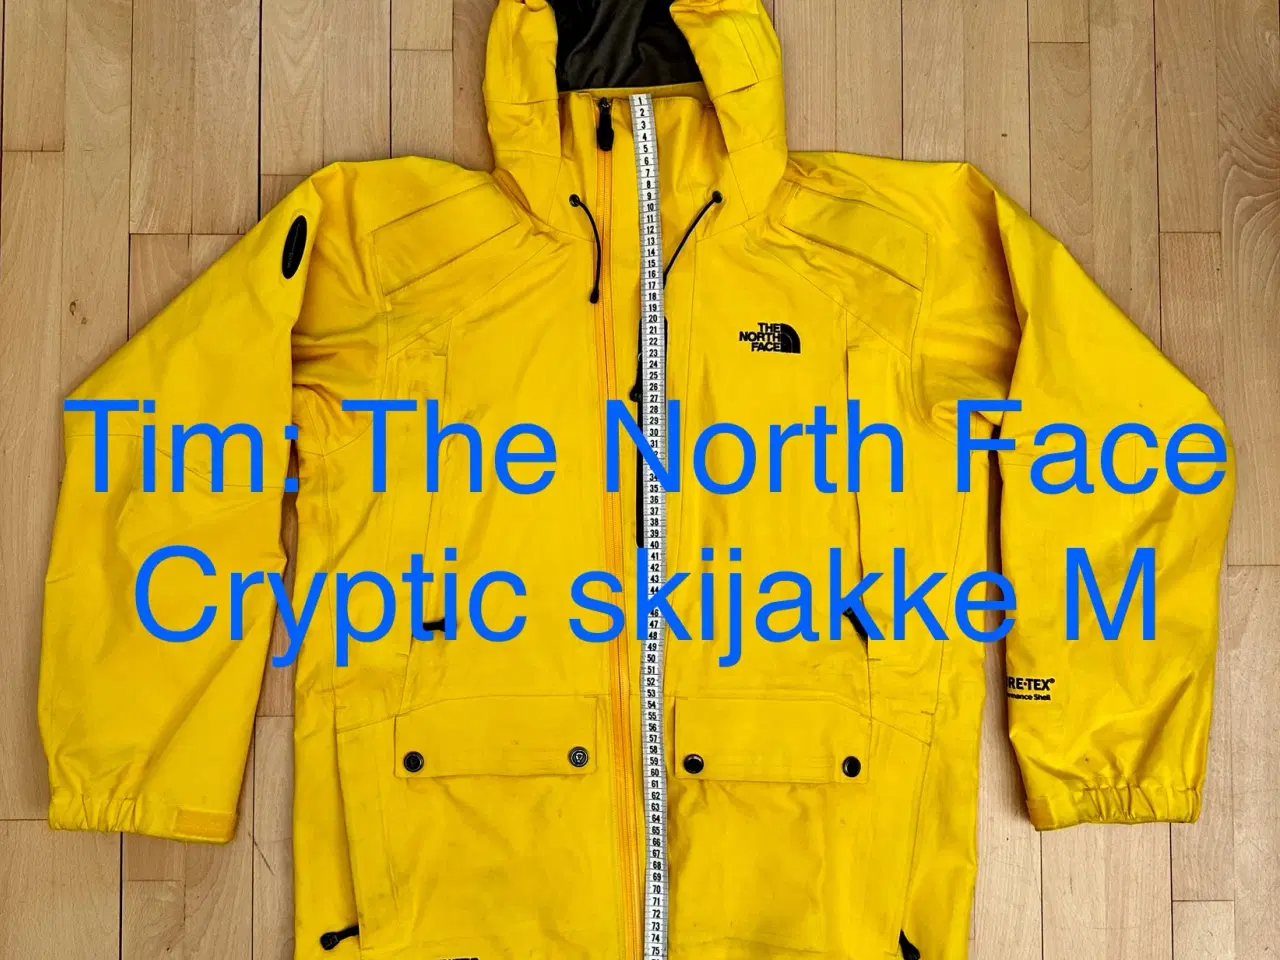 Billede 3 - The North Face Cryptic skijakke M 